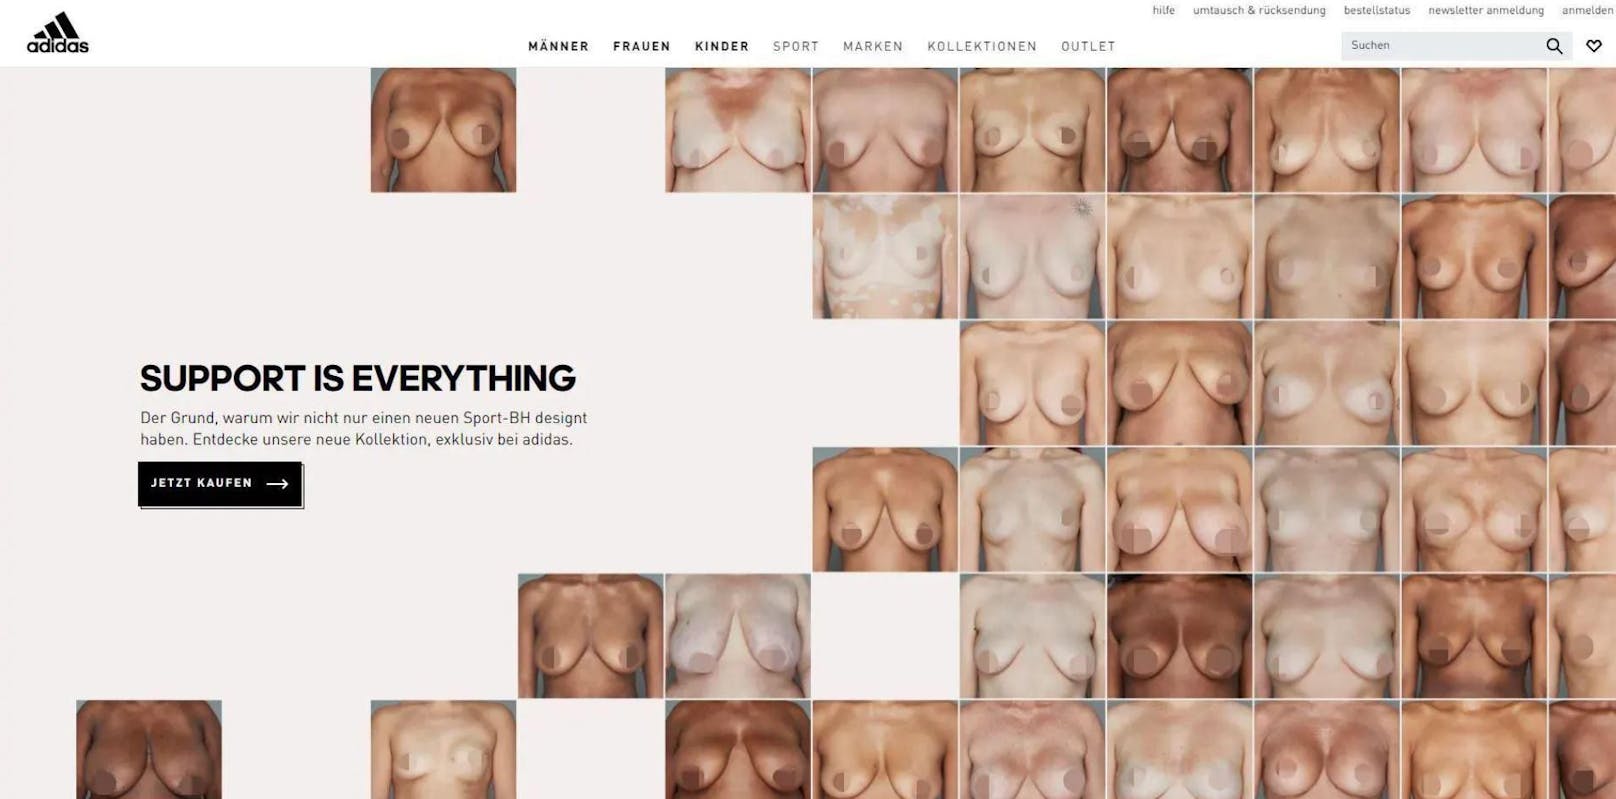 Mit der Kampagne "Support for Everything" sorgt Adidas seit diesem Frühjahr für Aufsehen. Darauf sind die entblössten Brüste von Frauen zu sehen. Die Marke will damit für mehr Diversität einstehen.